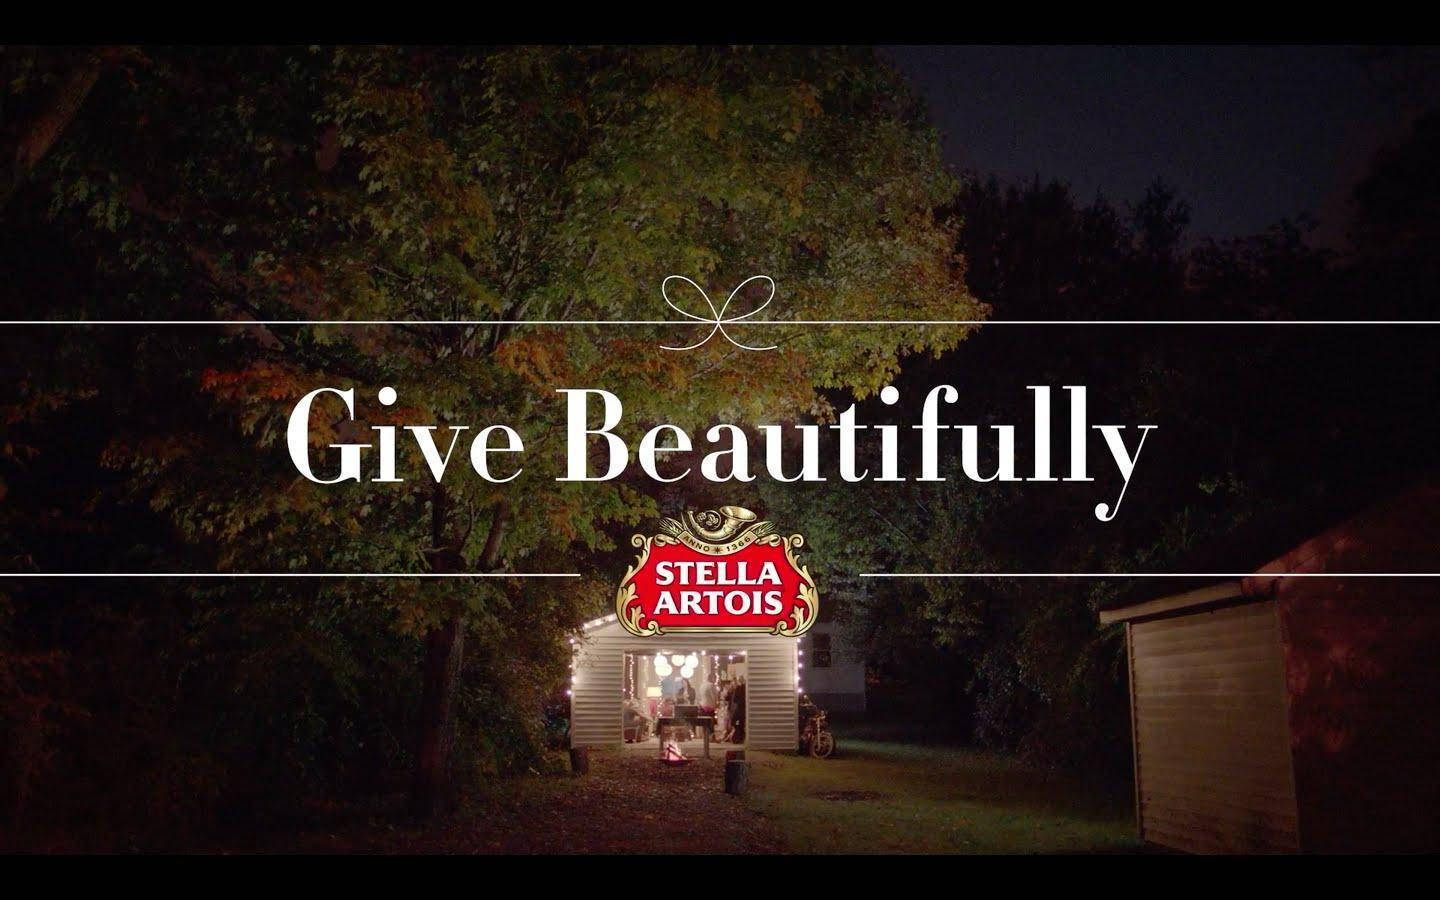 Gevackert Stella Artois Öl 2014 Reklam Som Bakgrundsbild Till Din Dator Eller Mobil. Wallpaper